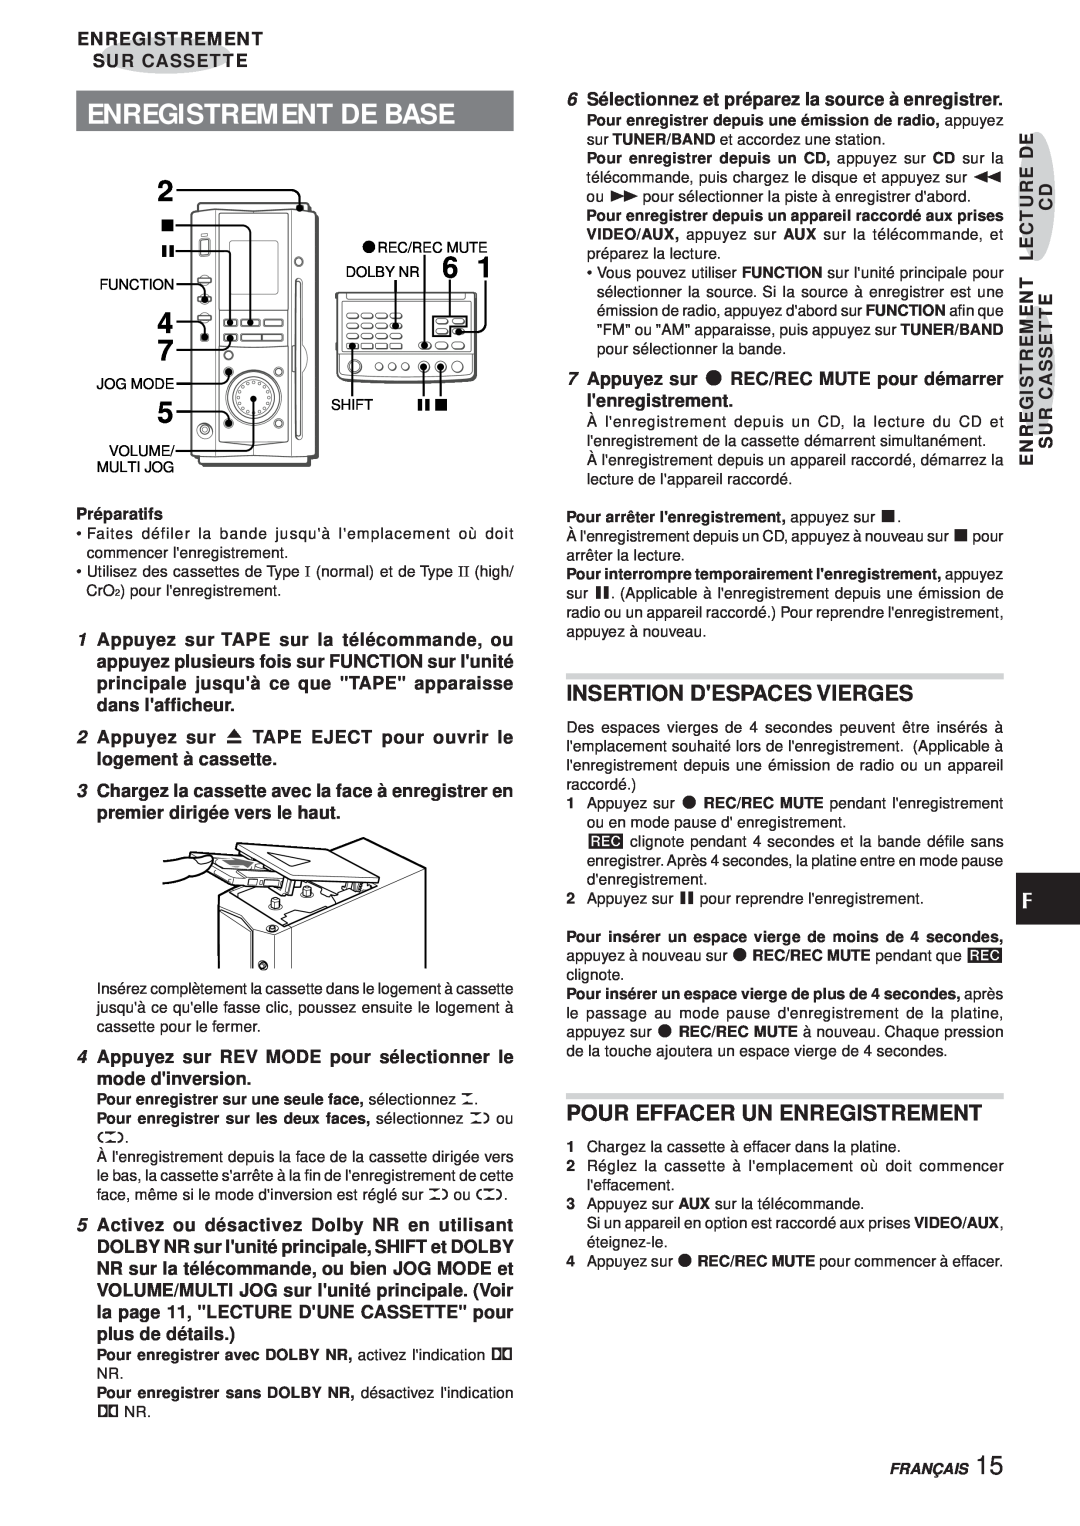 Aiwa XR-MS3 manual Enregistrement De Base, Insertion Despaces Vierges, Pour Effacer Un Enregistrement, lenregistrement 